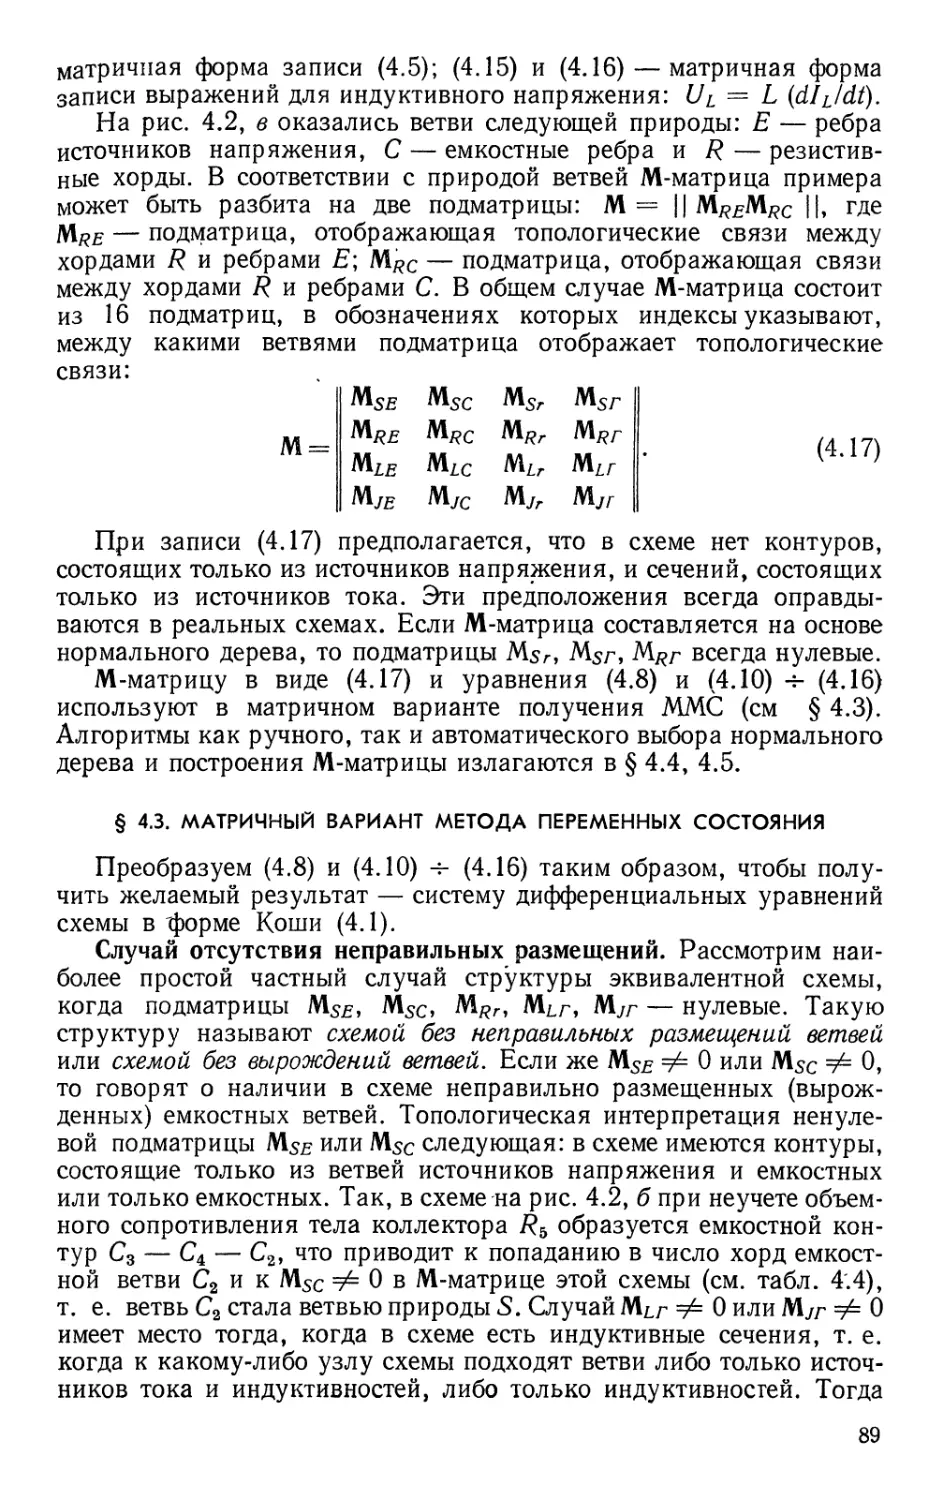 §4.3. Матричный вариант метода переменных состояния